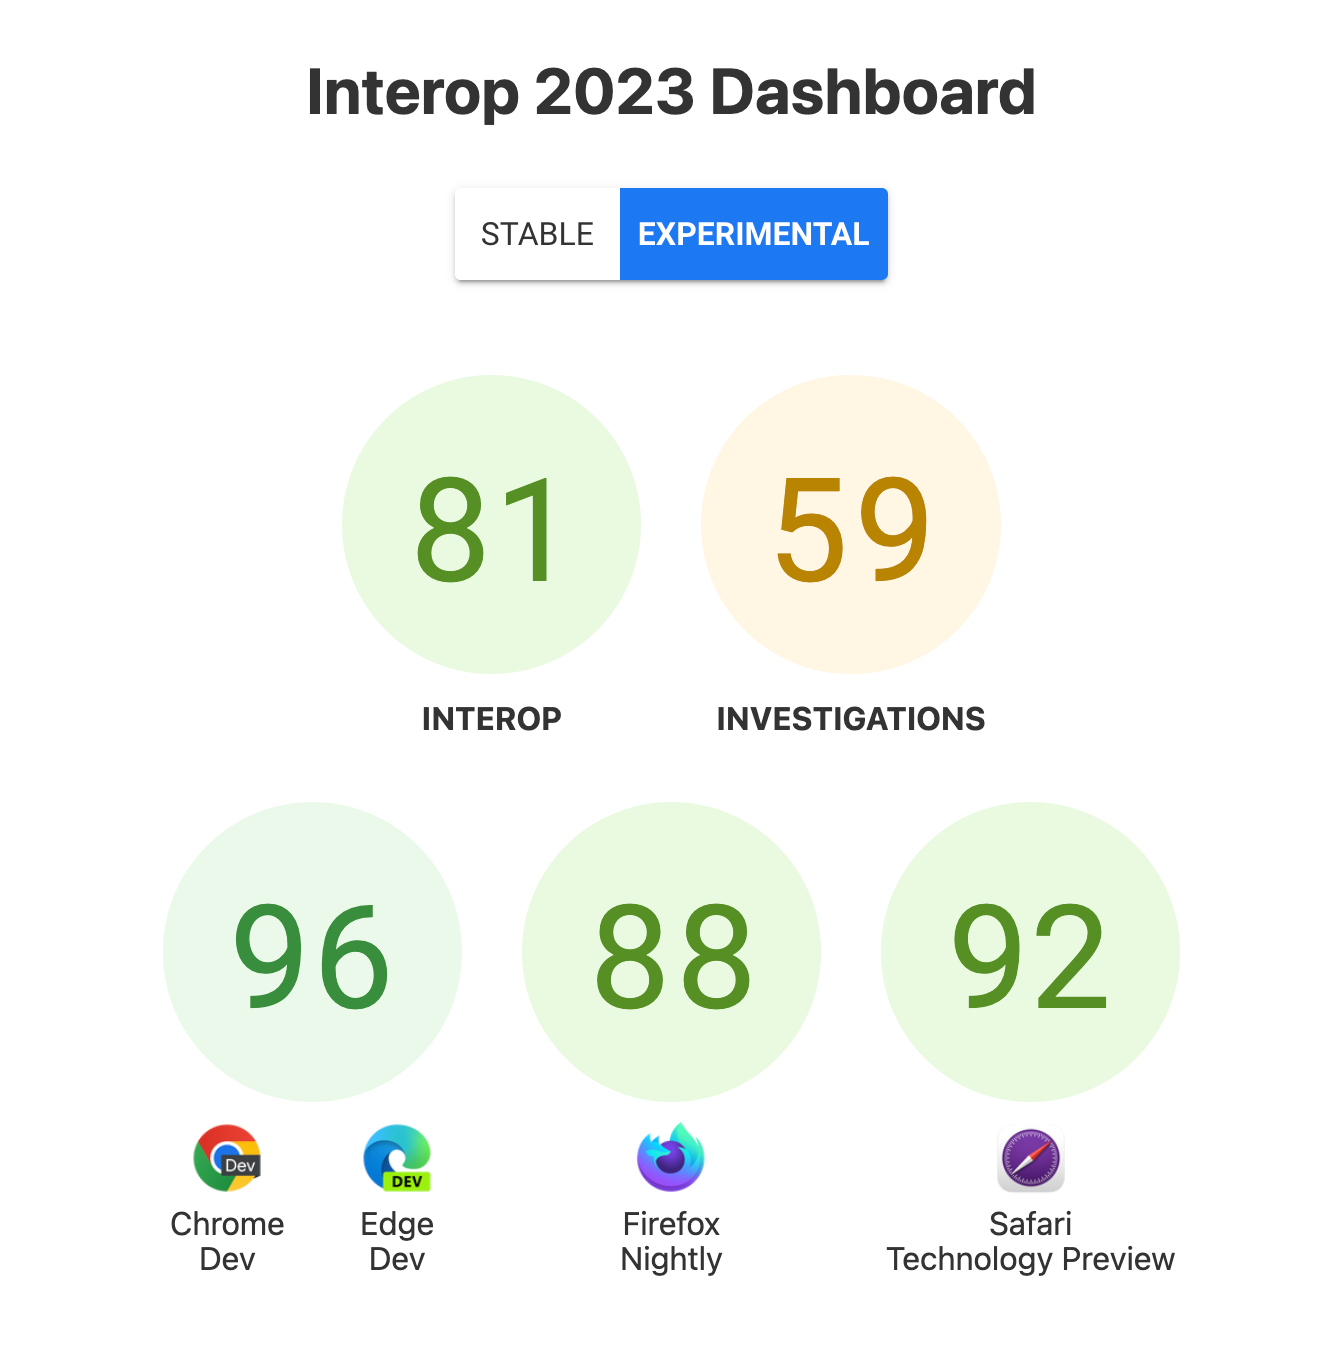 Общие оценки для Interop: 81, Investigations 59 и для каждого браузера, 96 для Chrome Dev и Edge Dev, 88 для Firefox Nightly и 92 для Safari Technology Preview.